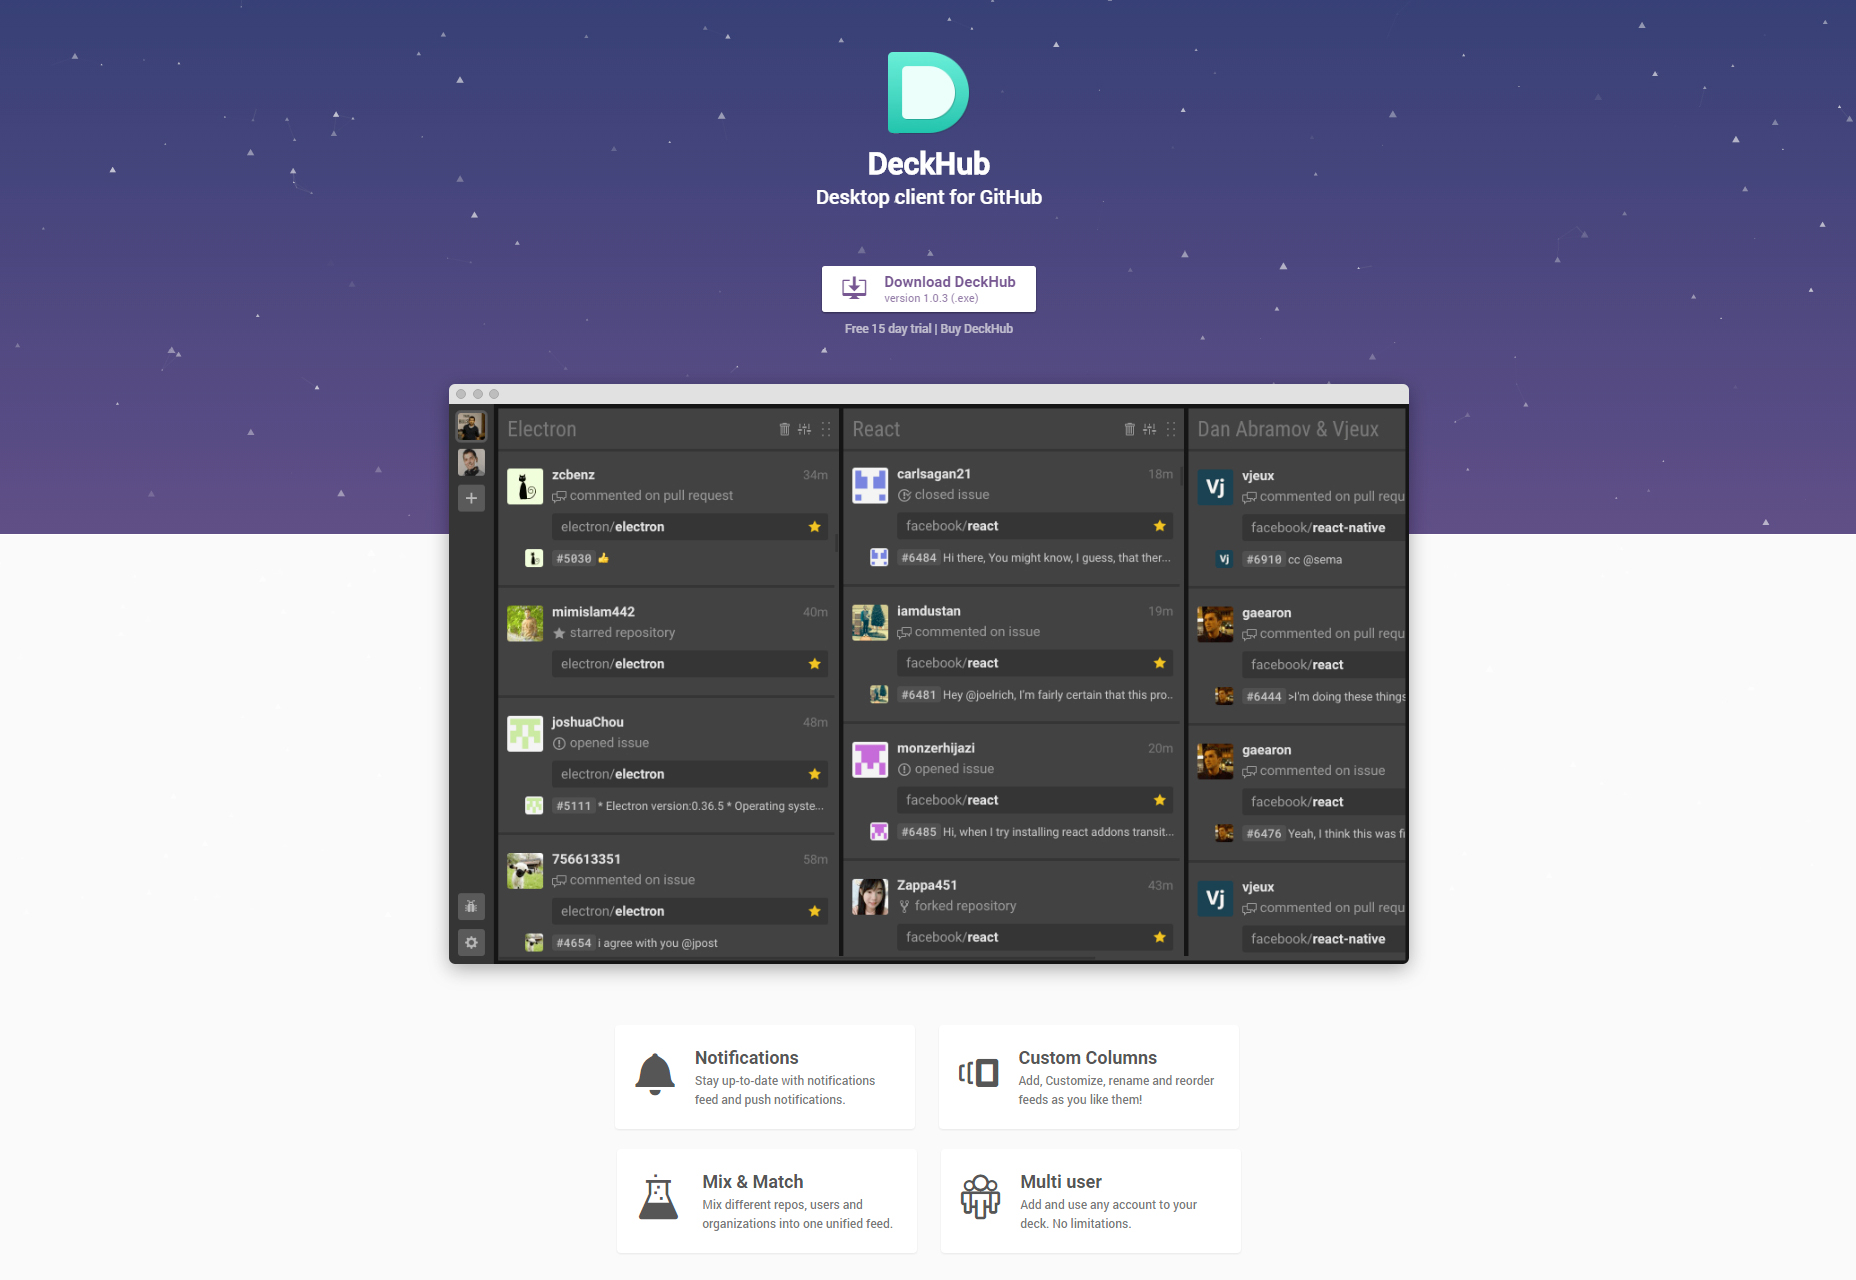 deckhub-desktop-client-for-github